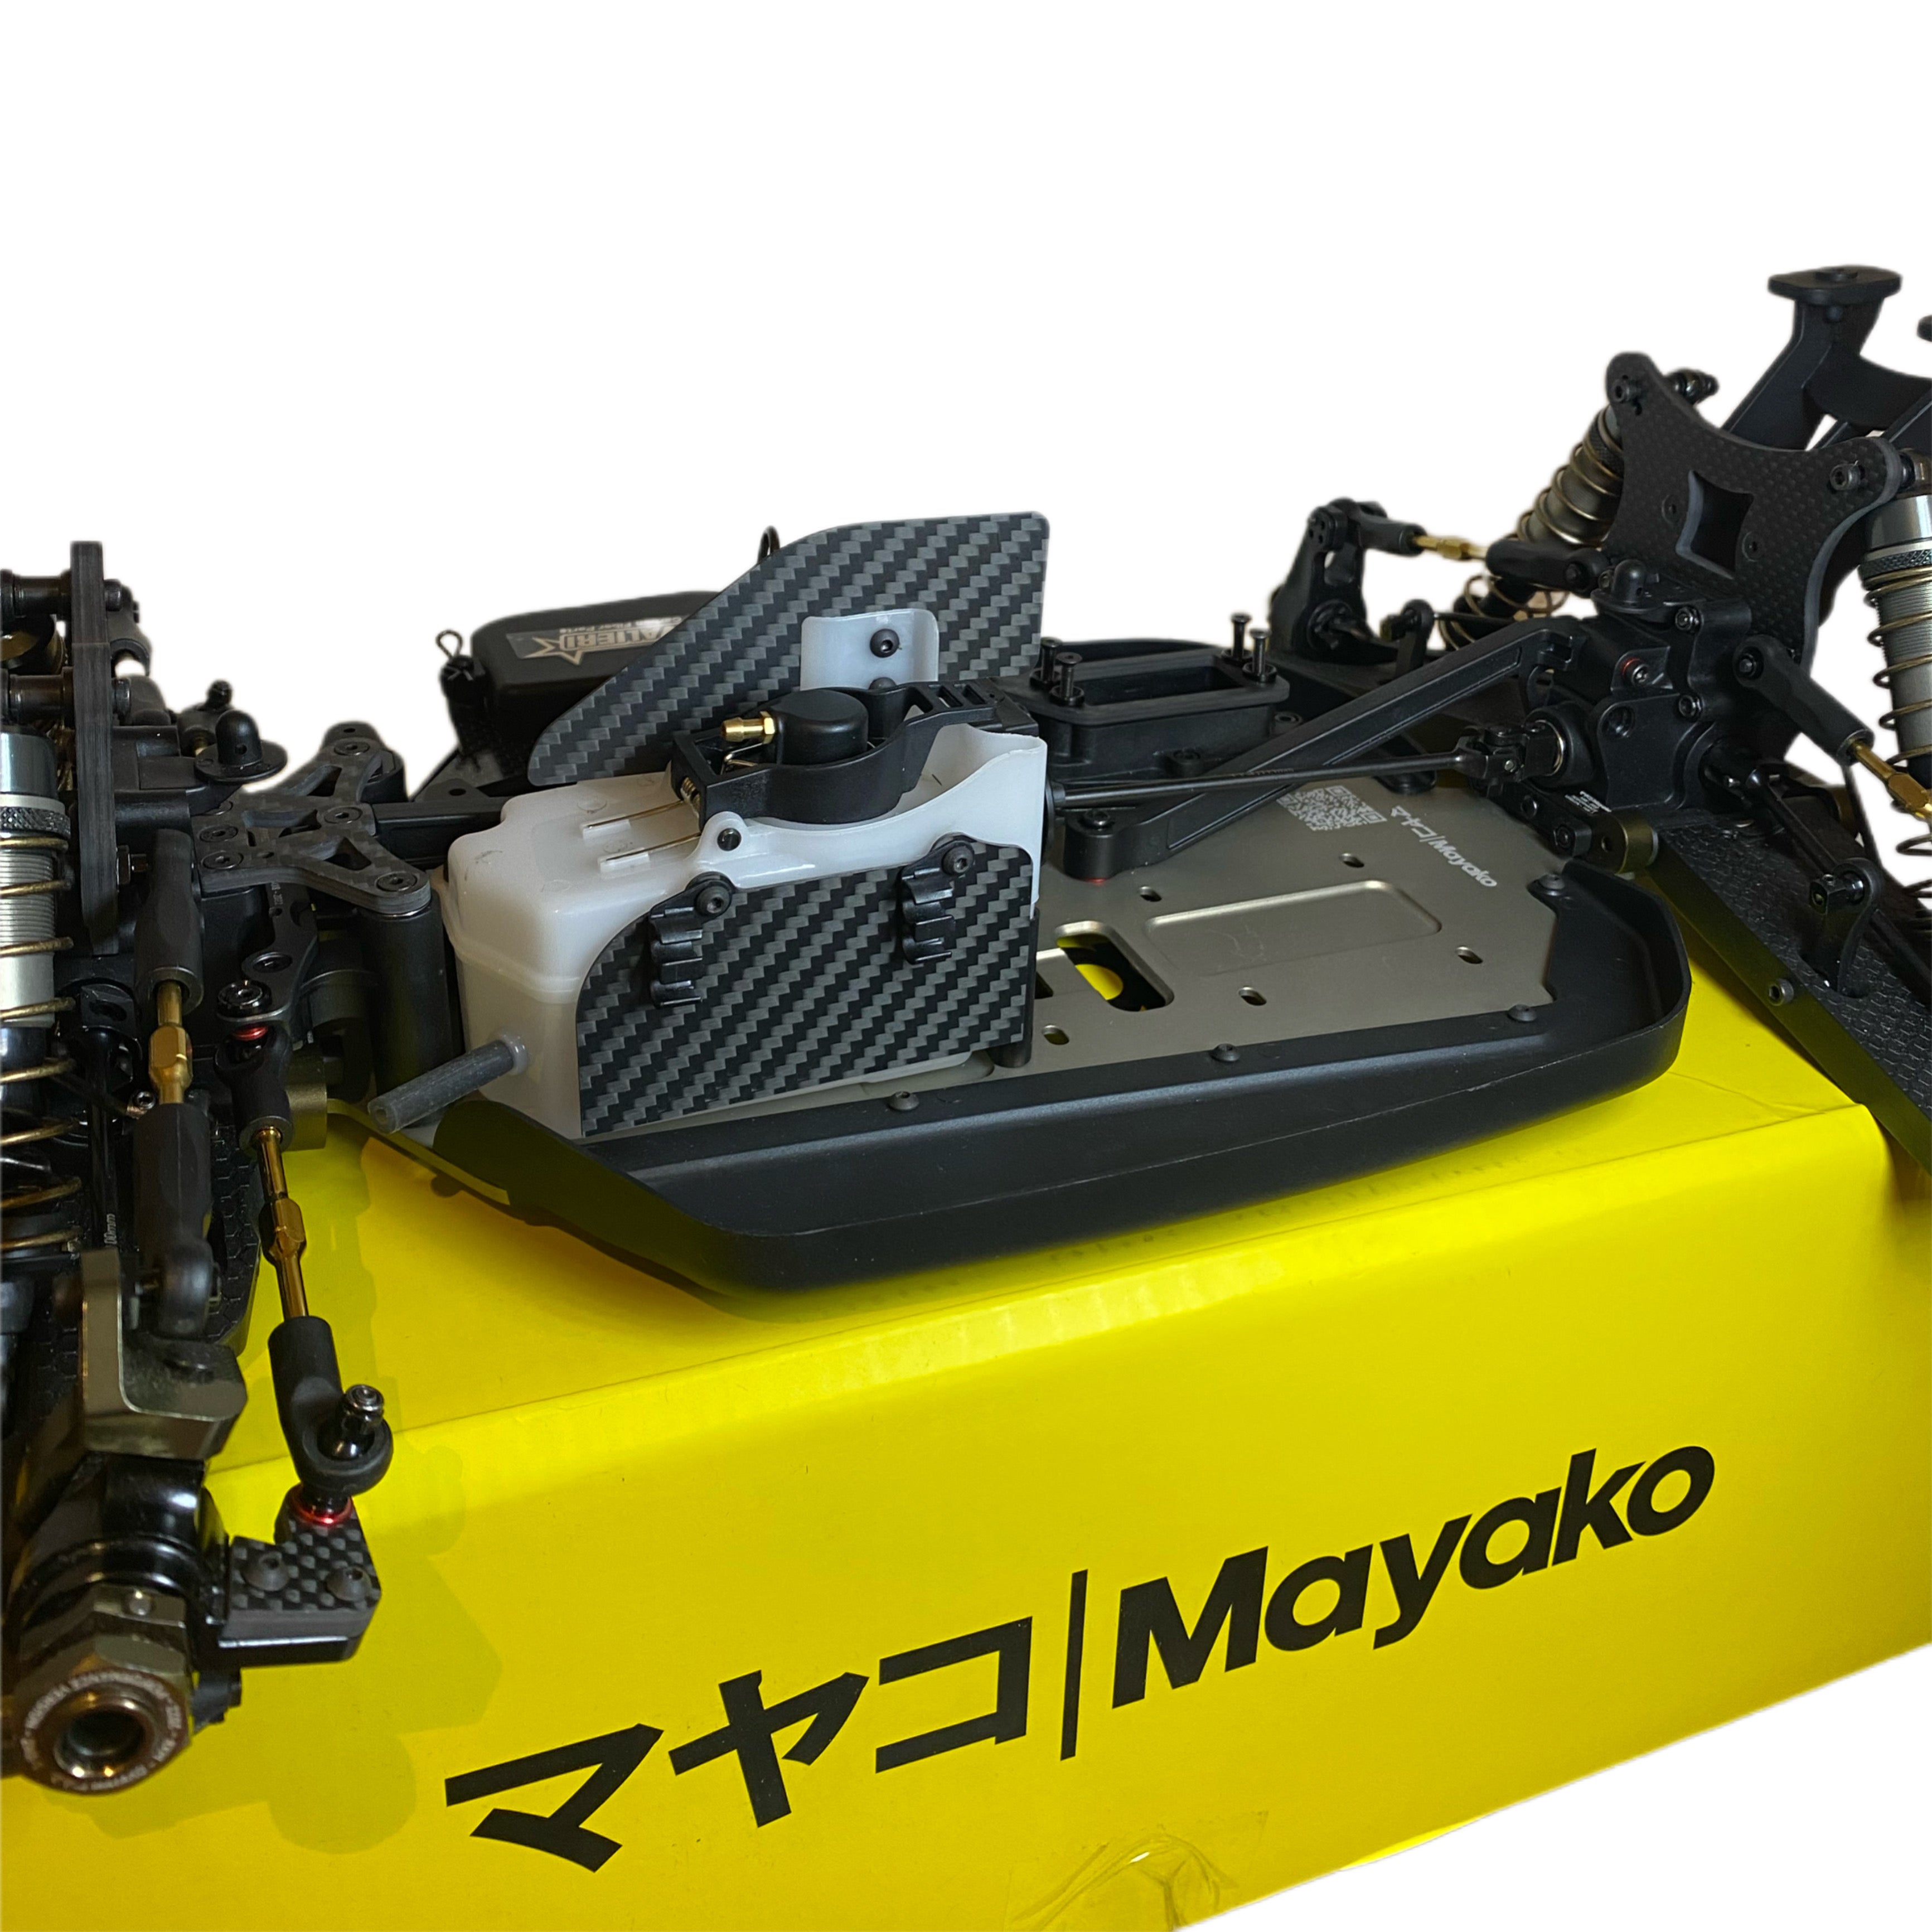 Mayako MX8